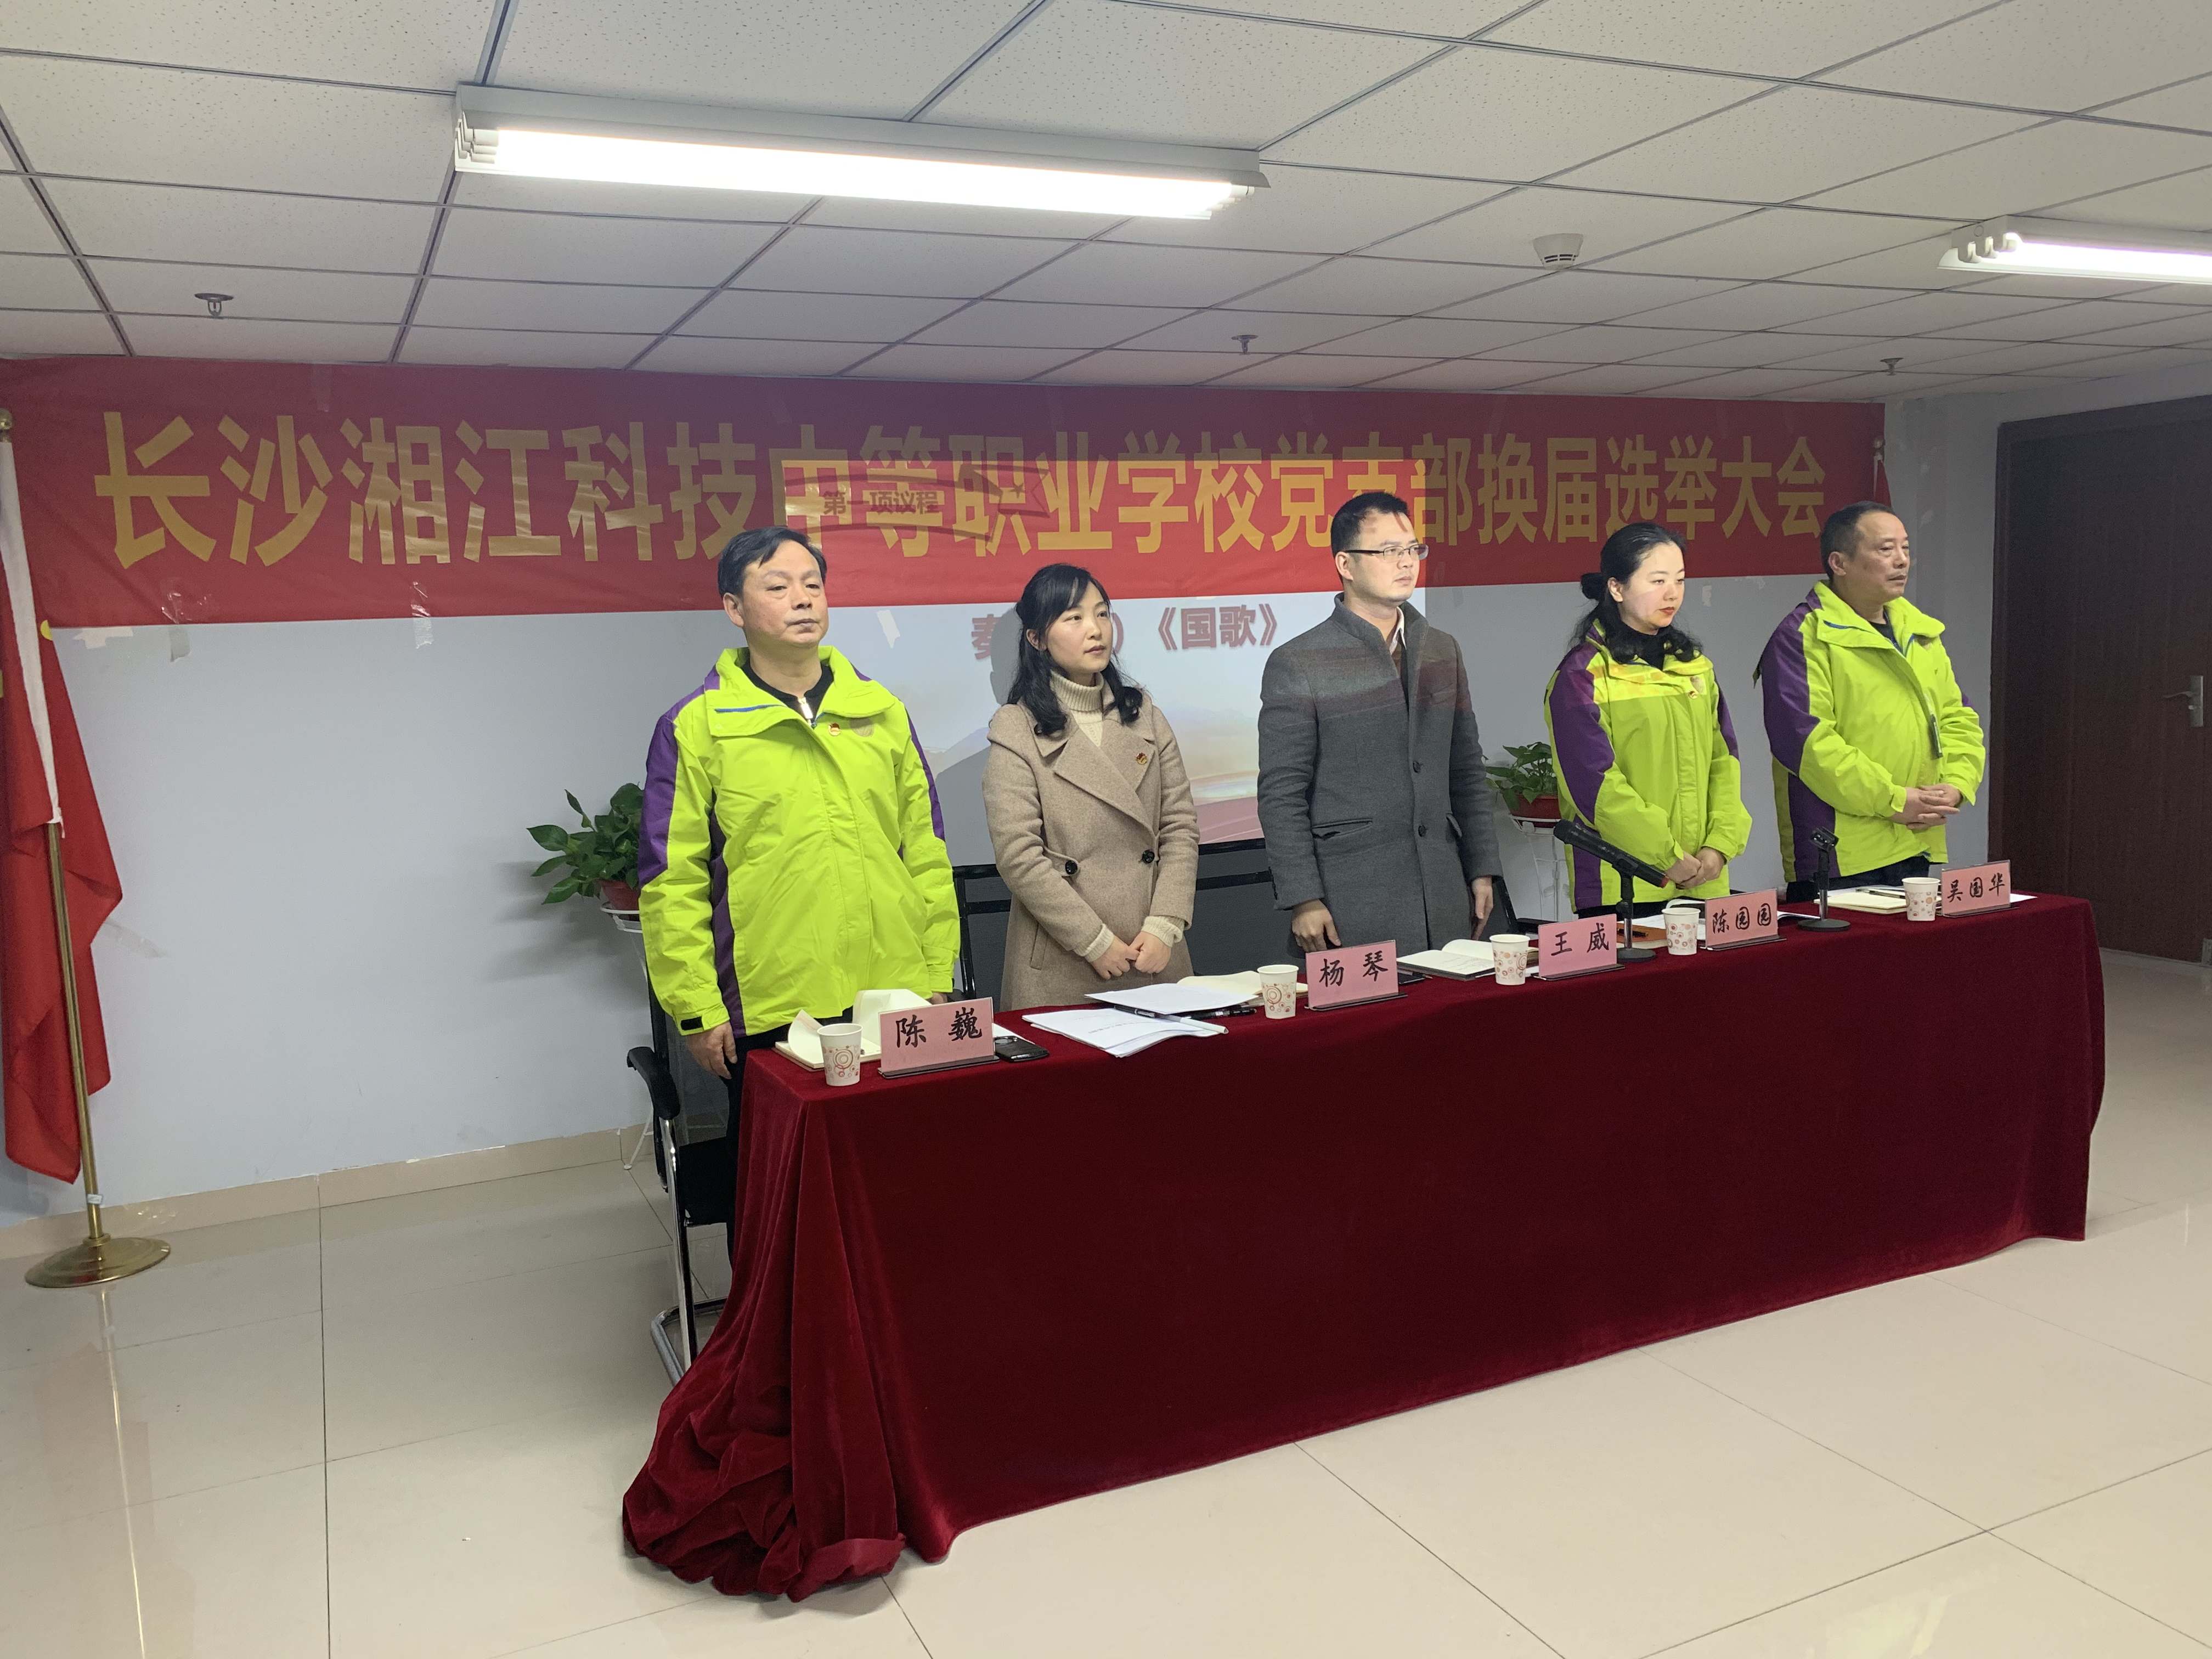 【党建】| 长沙湘江科技学校党支部召开2018年度组织生活会和民主评议党员